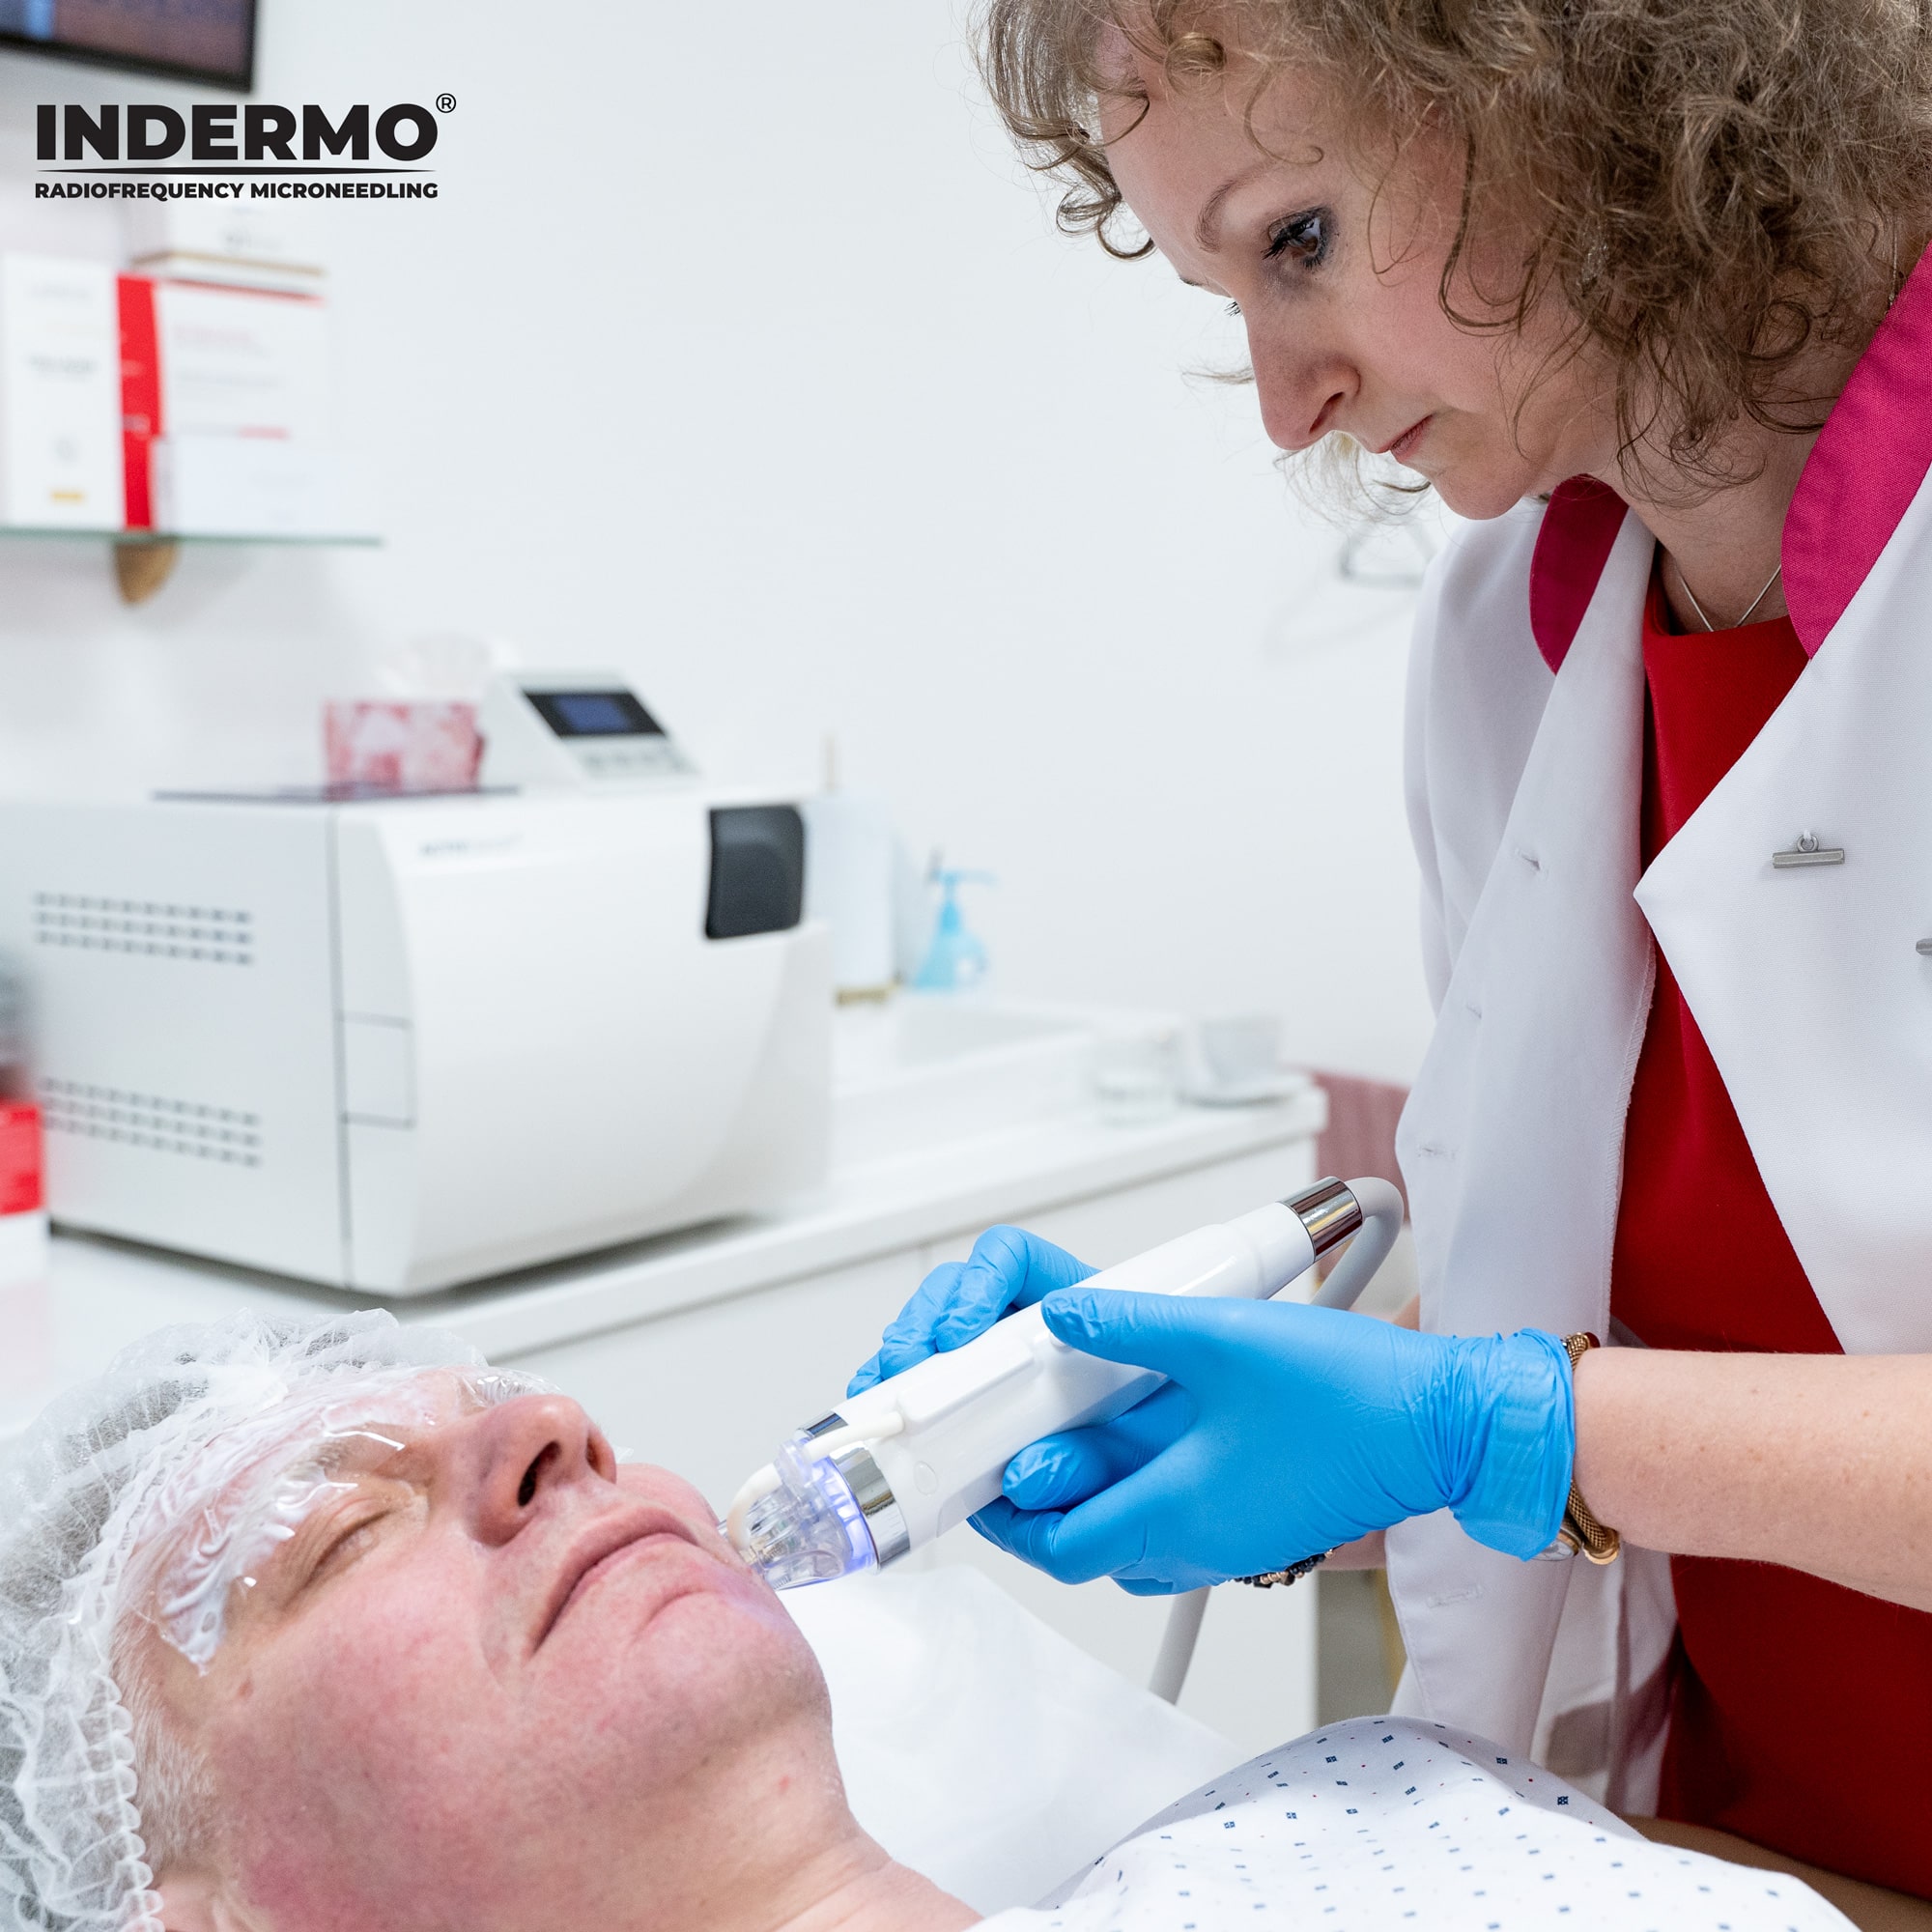 Frakcyjna radiofrekwencja mikroigłowa bardzo często jest wykorzystywana przez kosmetologów do nieinwazyjnego odmładzania skóry